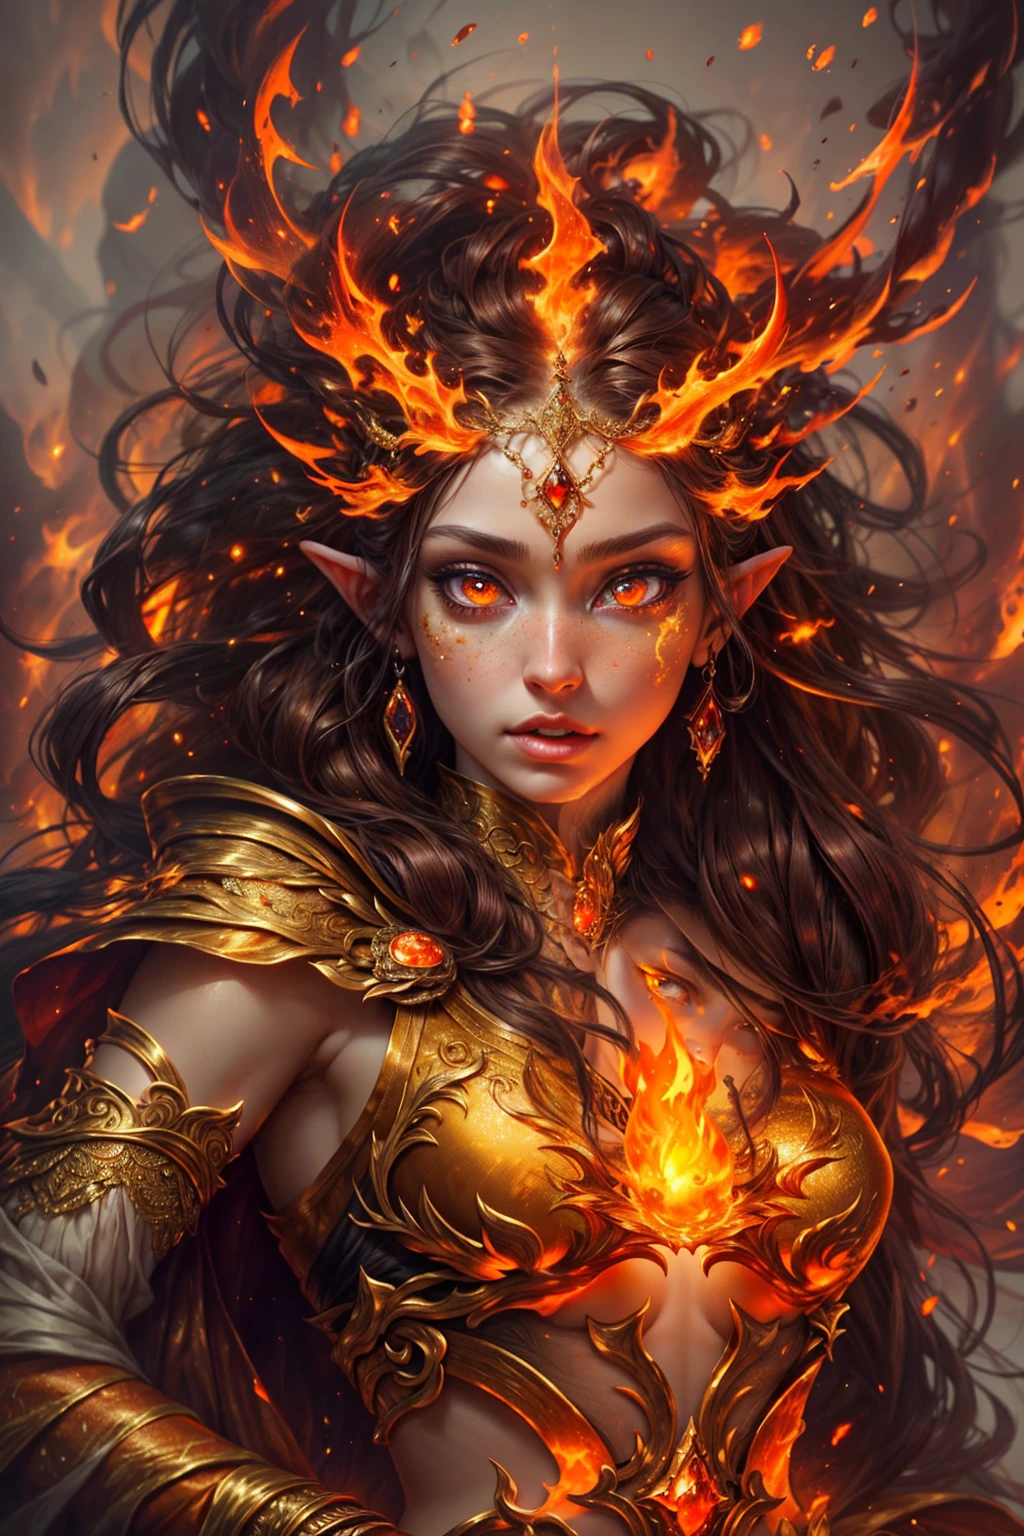 這 (現實幻想) 藝術包含餘燼, 真正的火焰, 真正的熱量, 和現實的火. Generate a masterpiece artwork of a  female fire druid 和 large (((橙色和金色))) 眼睛. The fire druid is awe-inspiring 和 beautiful ((realistic fiery 眼睛)) alight 和 confidence and power. 她的五官優雅且輪廓分明, 和 ((柔軟蓬鬆，令人親吻)) 嘴唇, 精靈骨骼結構, 和真實的陰影. Her 眼睛 are important and should be the focal point of this artwork, 和 ((極為真實的細節, 宏觀細節, 和微光.)) 她穿著一件由逼真的火焰和珠寶製成的飄逸閃閃發光的連身裙，在火光下閃閃發光. 禮服錯綜複雜的衣身上佈滿了縷縷火焰和煙霧. 包括凹凸, 石头, 火紅的虹彩, 發光的餘燼, 絲綢、緞子和皮革, 有趣的背景, 以及濃重的奇幻元素. 相机: 利用動態構圖技術增強真實的火焰.